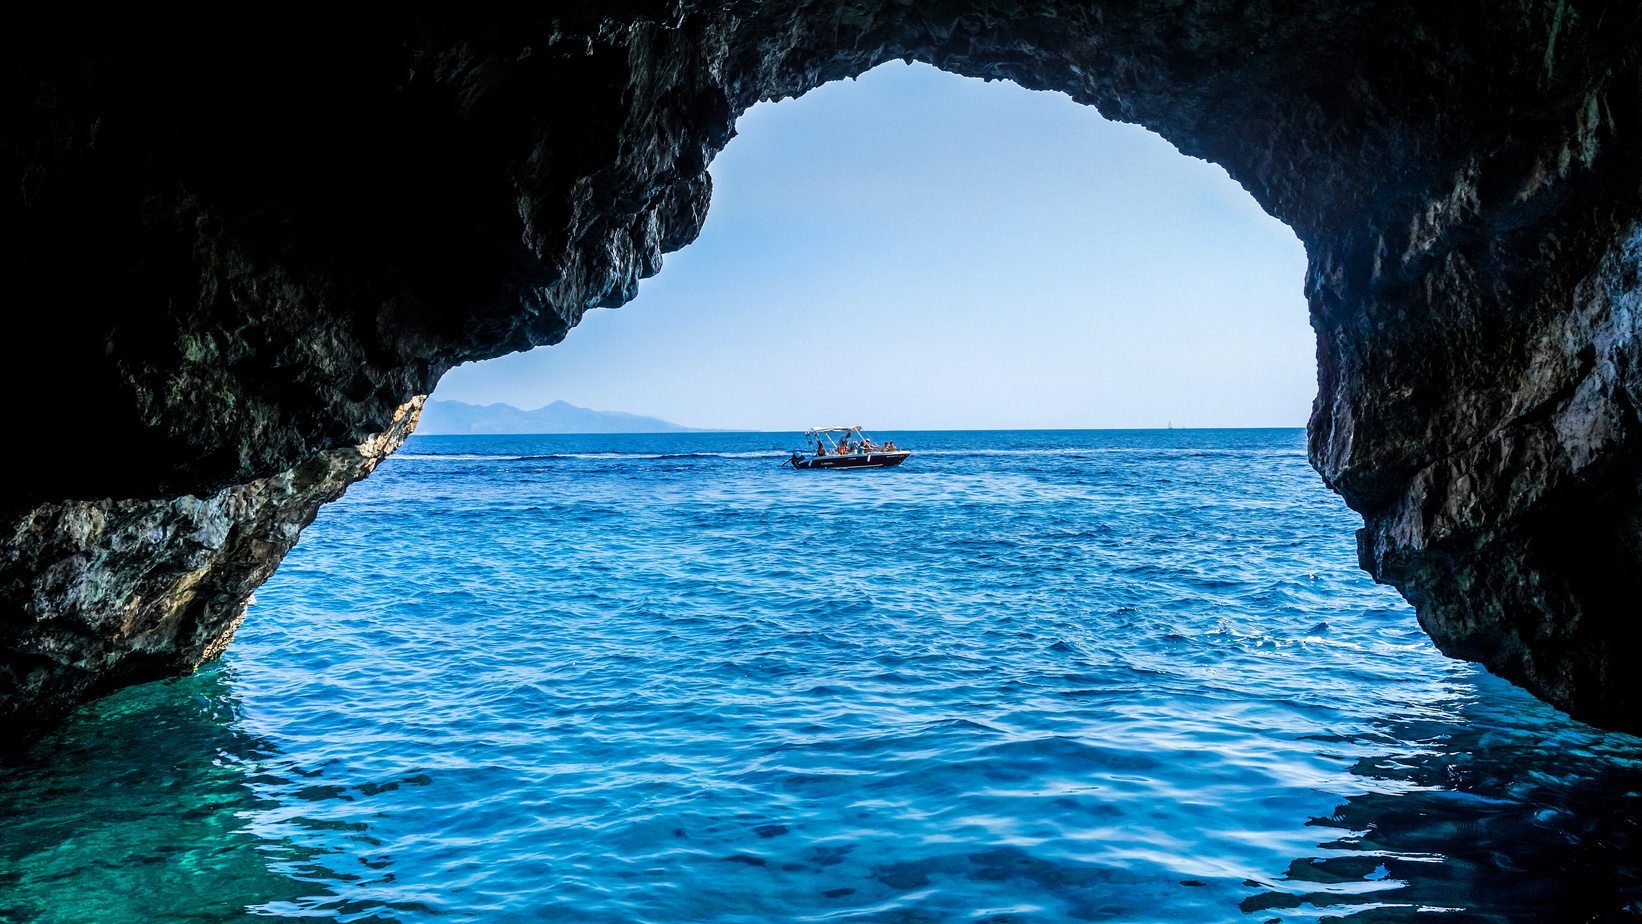 Sea Cave in Zakynthos, Greece